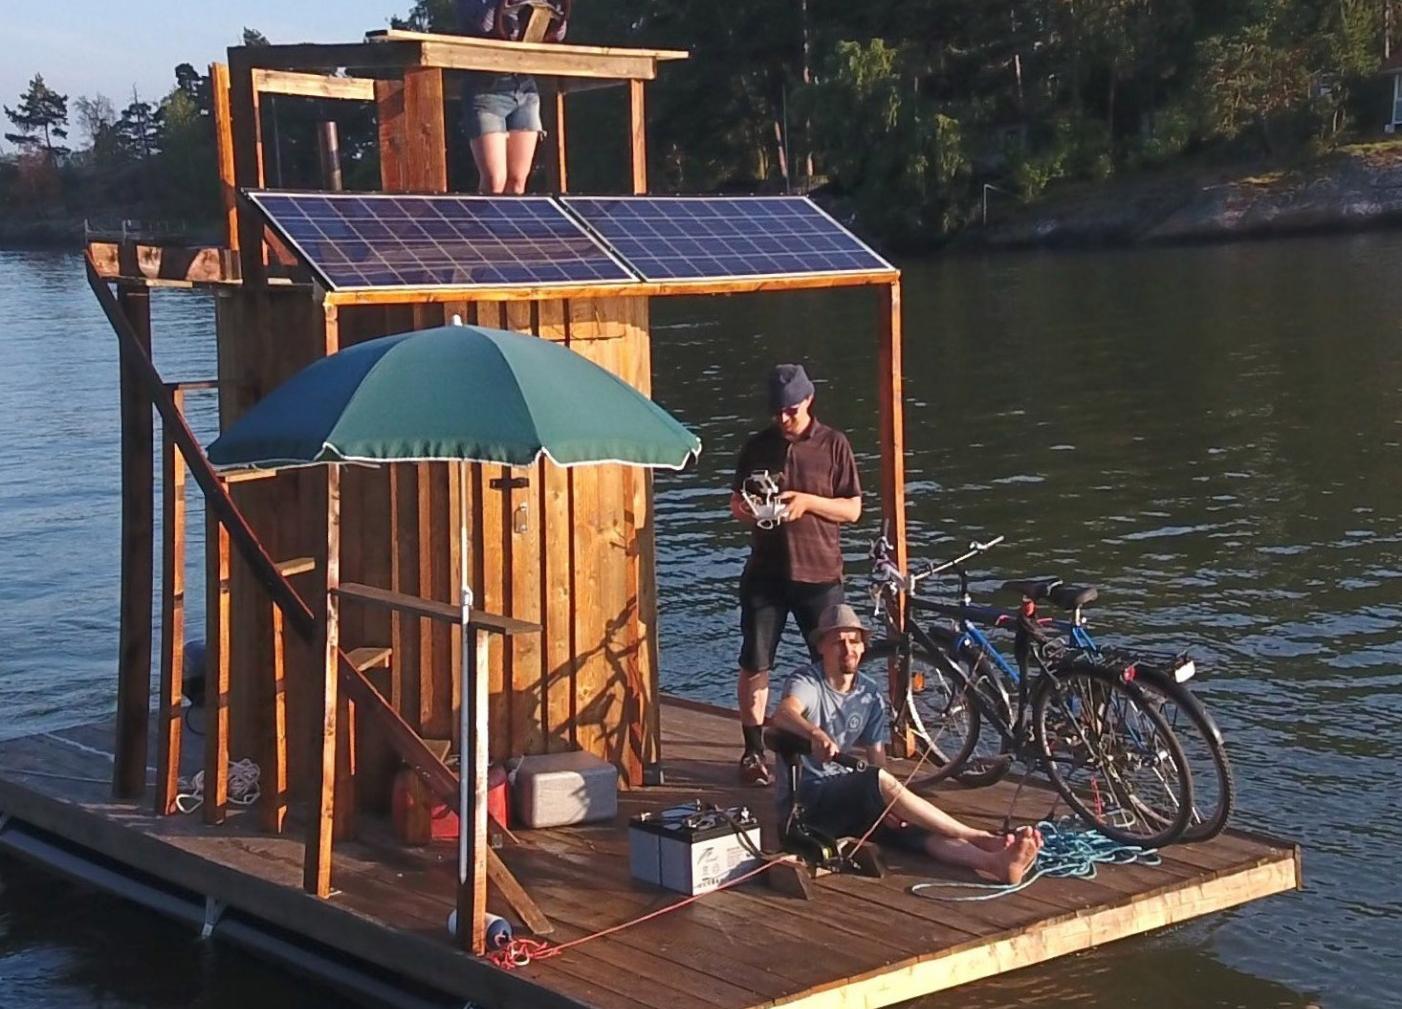 Видео дня: Финн отправится в Эстонию в плавучей сауне на солнечных батареях 